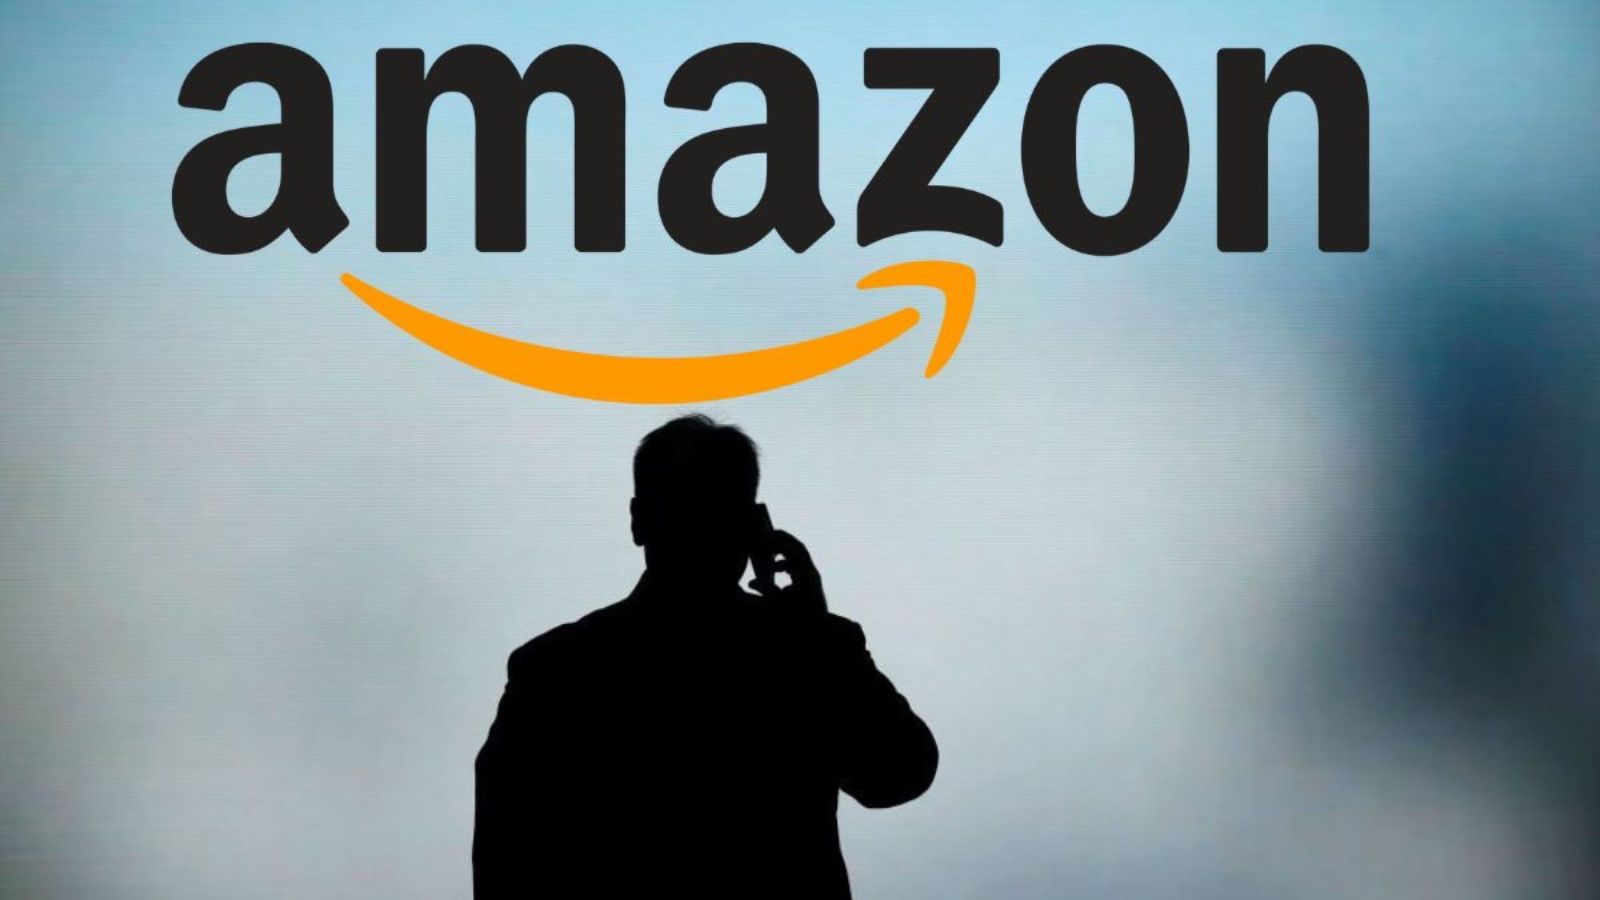 Amazon, FOLLIA pura oggi con il 70% di sconto e prodotti GRATIS